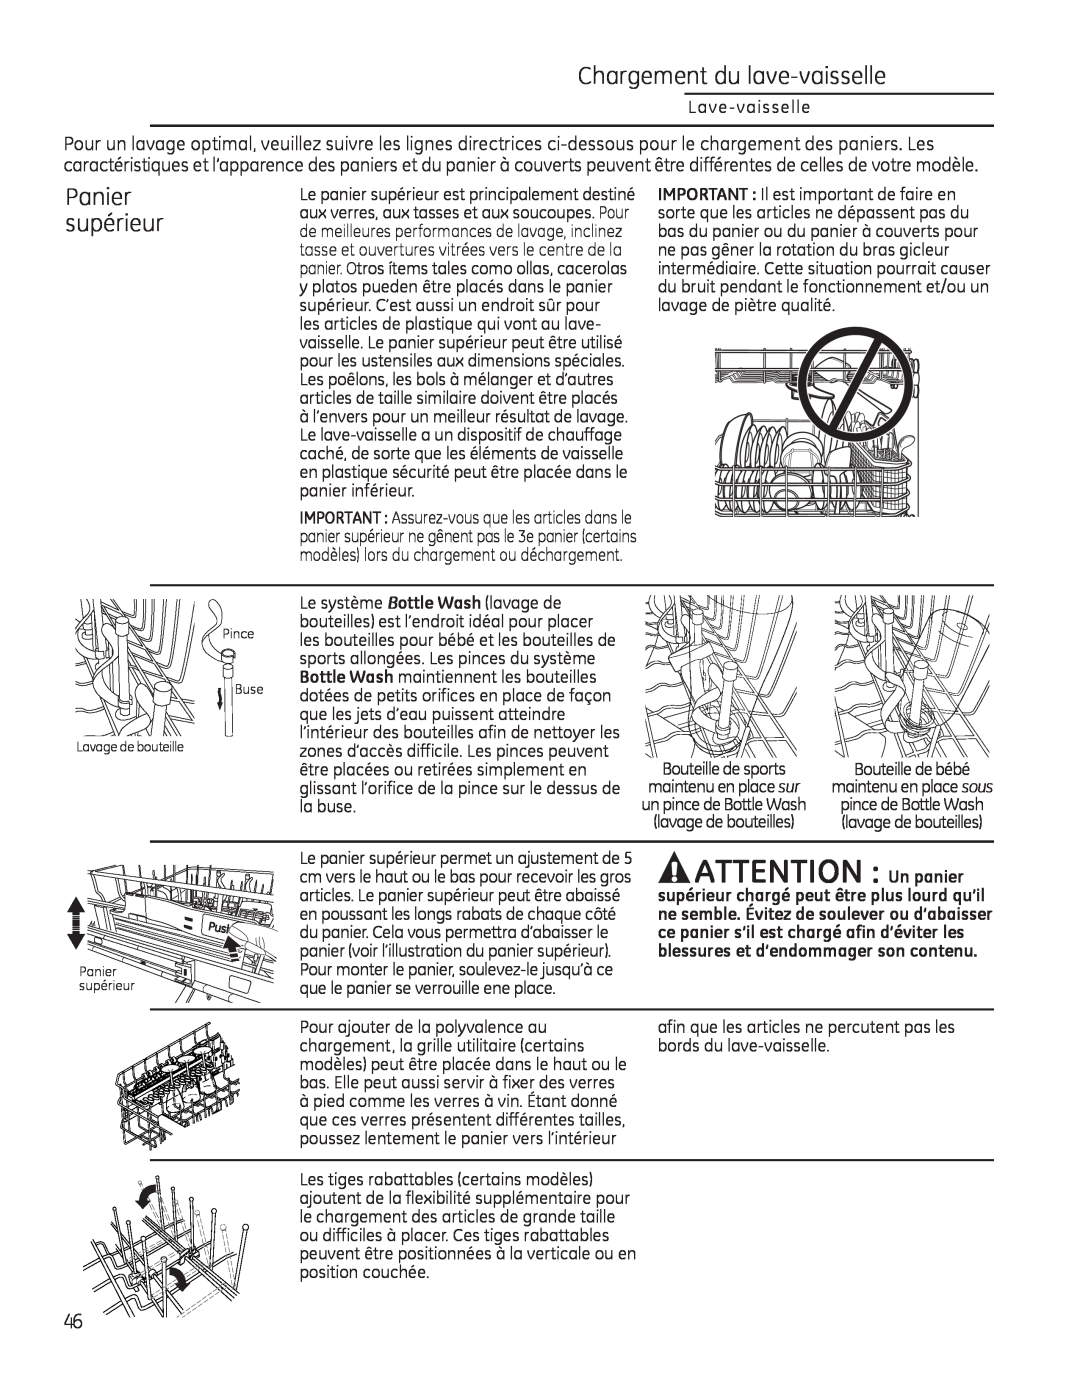 GE Monogram 49-55086 owner manual ATTENTION Un panier, Chargement du lave-vaisselle, Panier, supérieur 